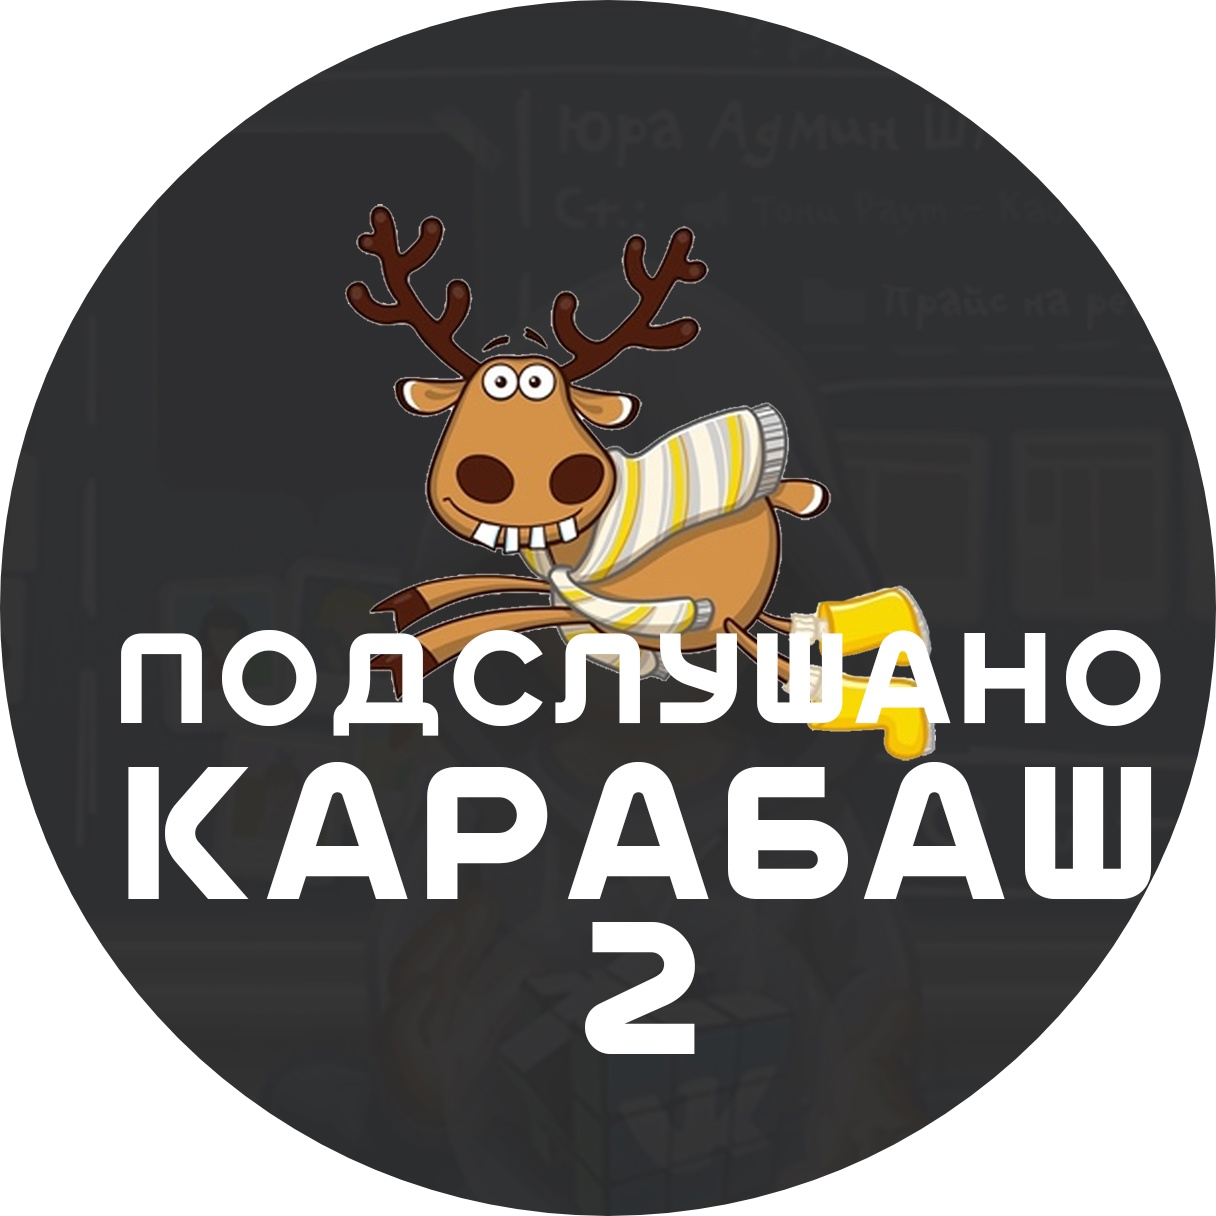 Раземщение рекламы Паблик ВКонтакте Подслушано Карабаш 2, г.Карабаш